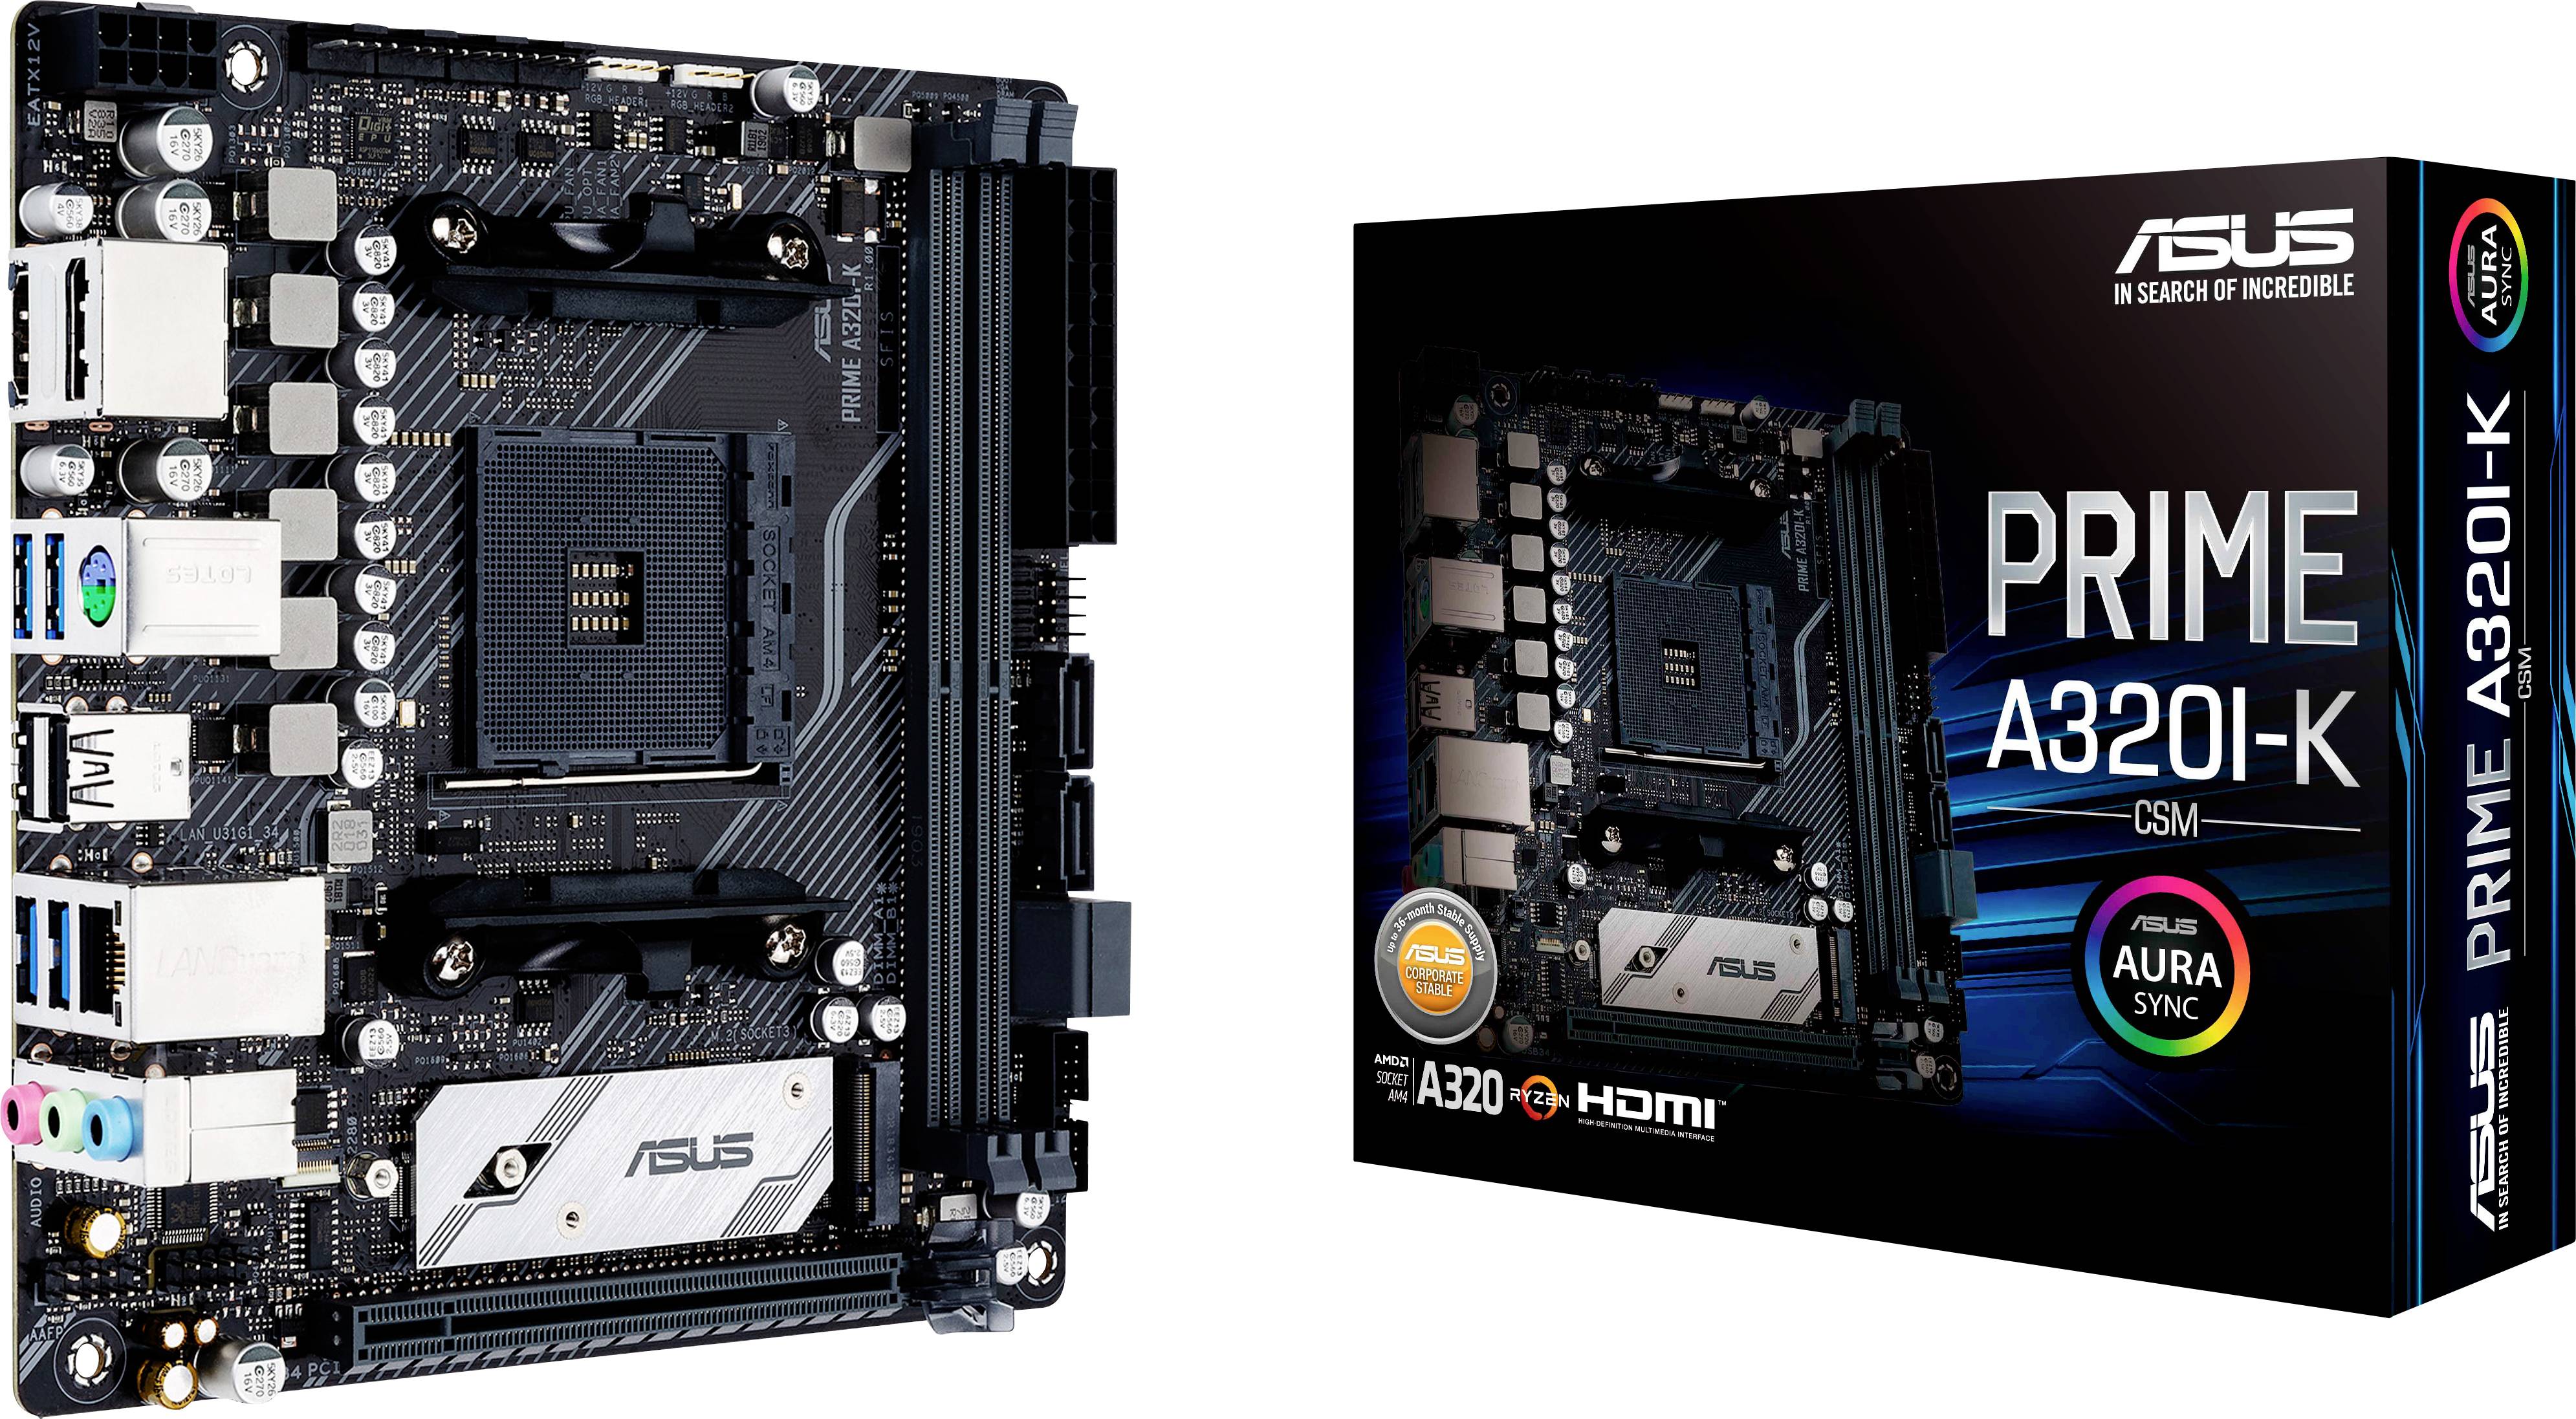 Asus PRIME A320I-K/CSM Motherboard PC base AMD AM4 Form factor (details ...